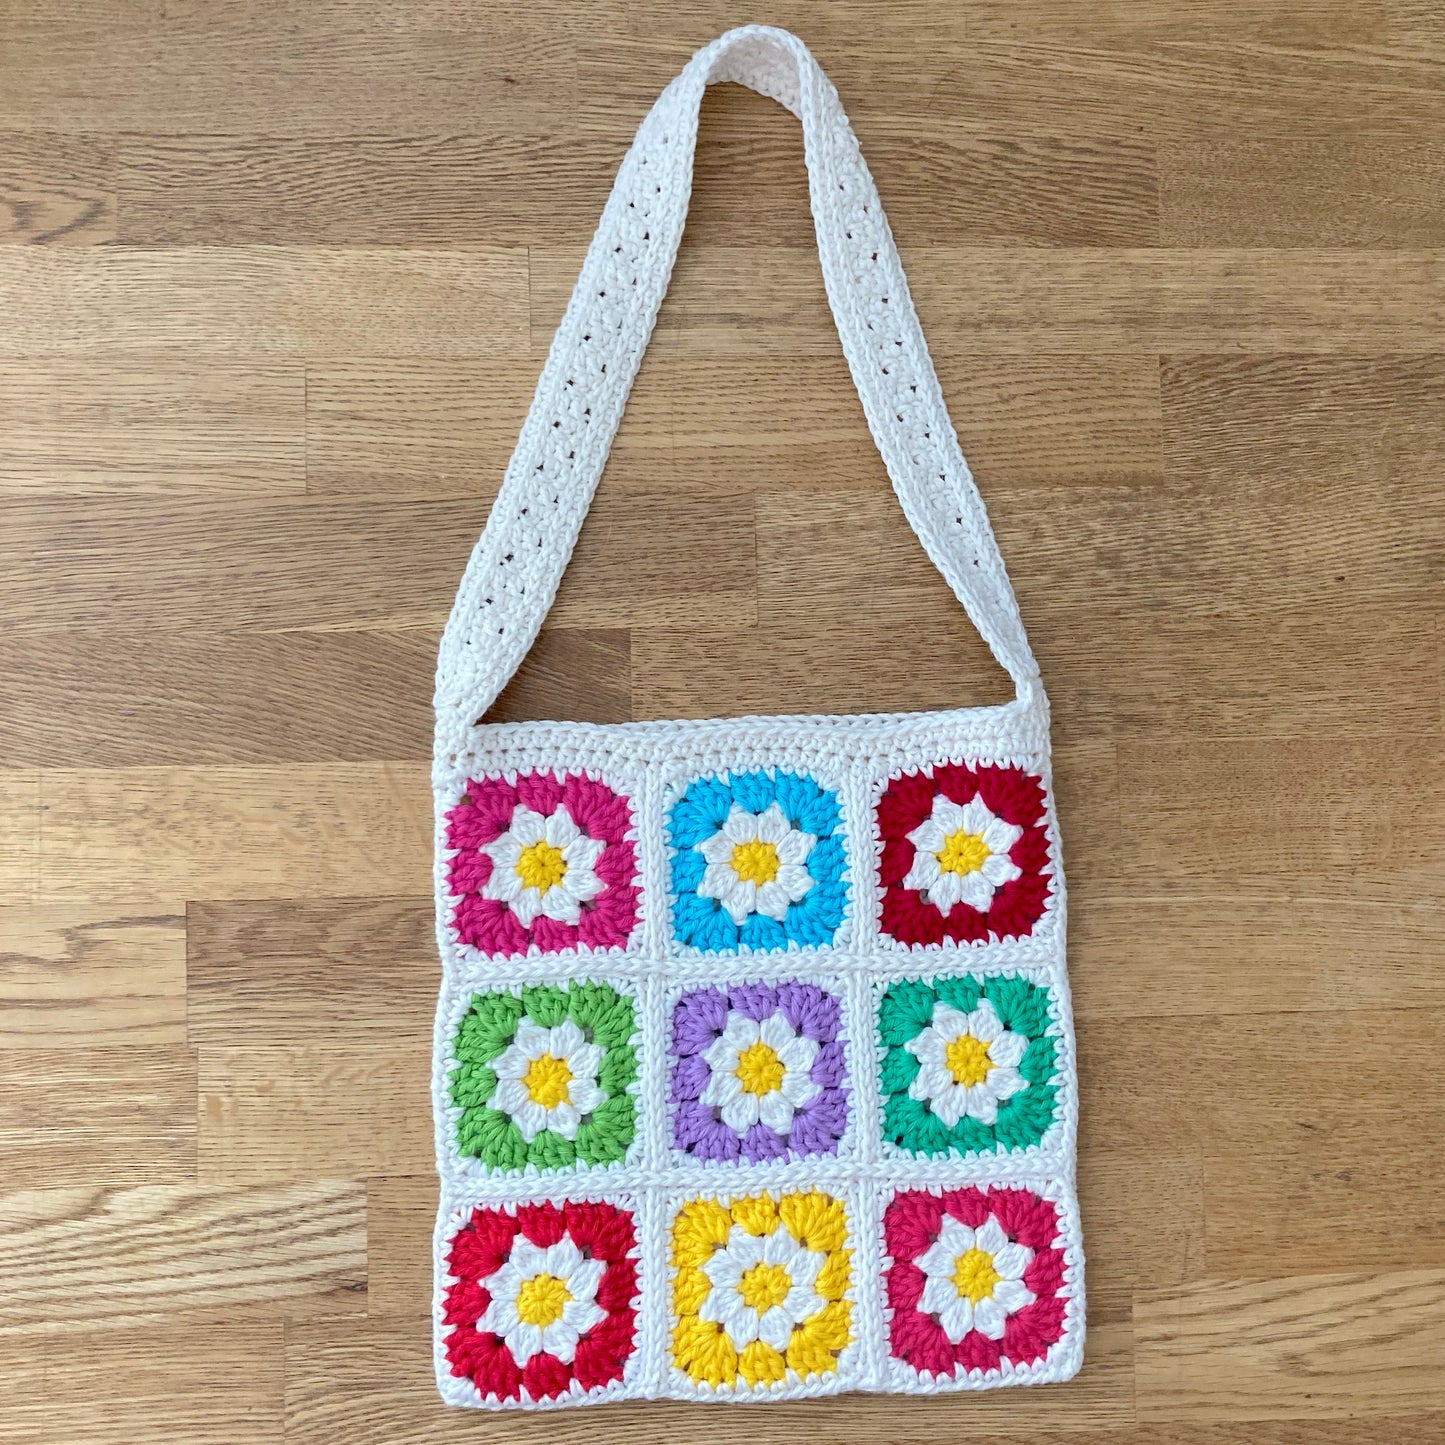 Daisy Rainbow Crochet Granny Square Bag